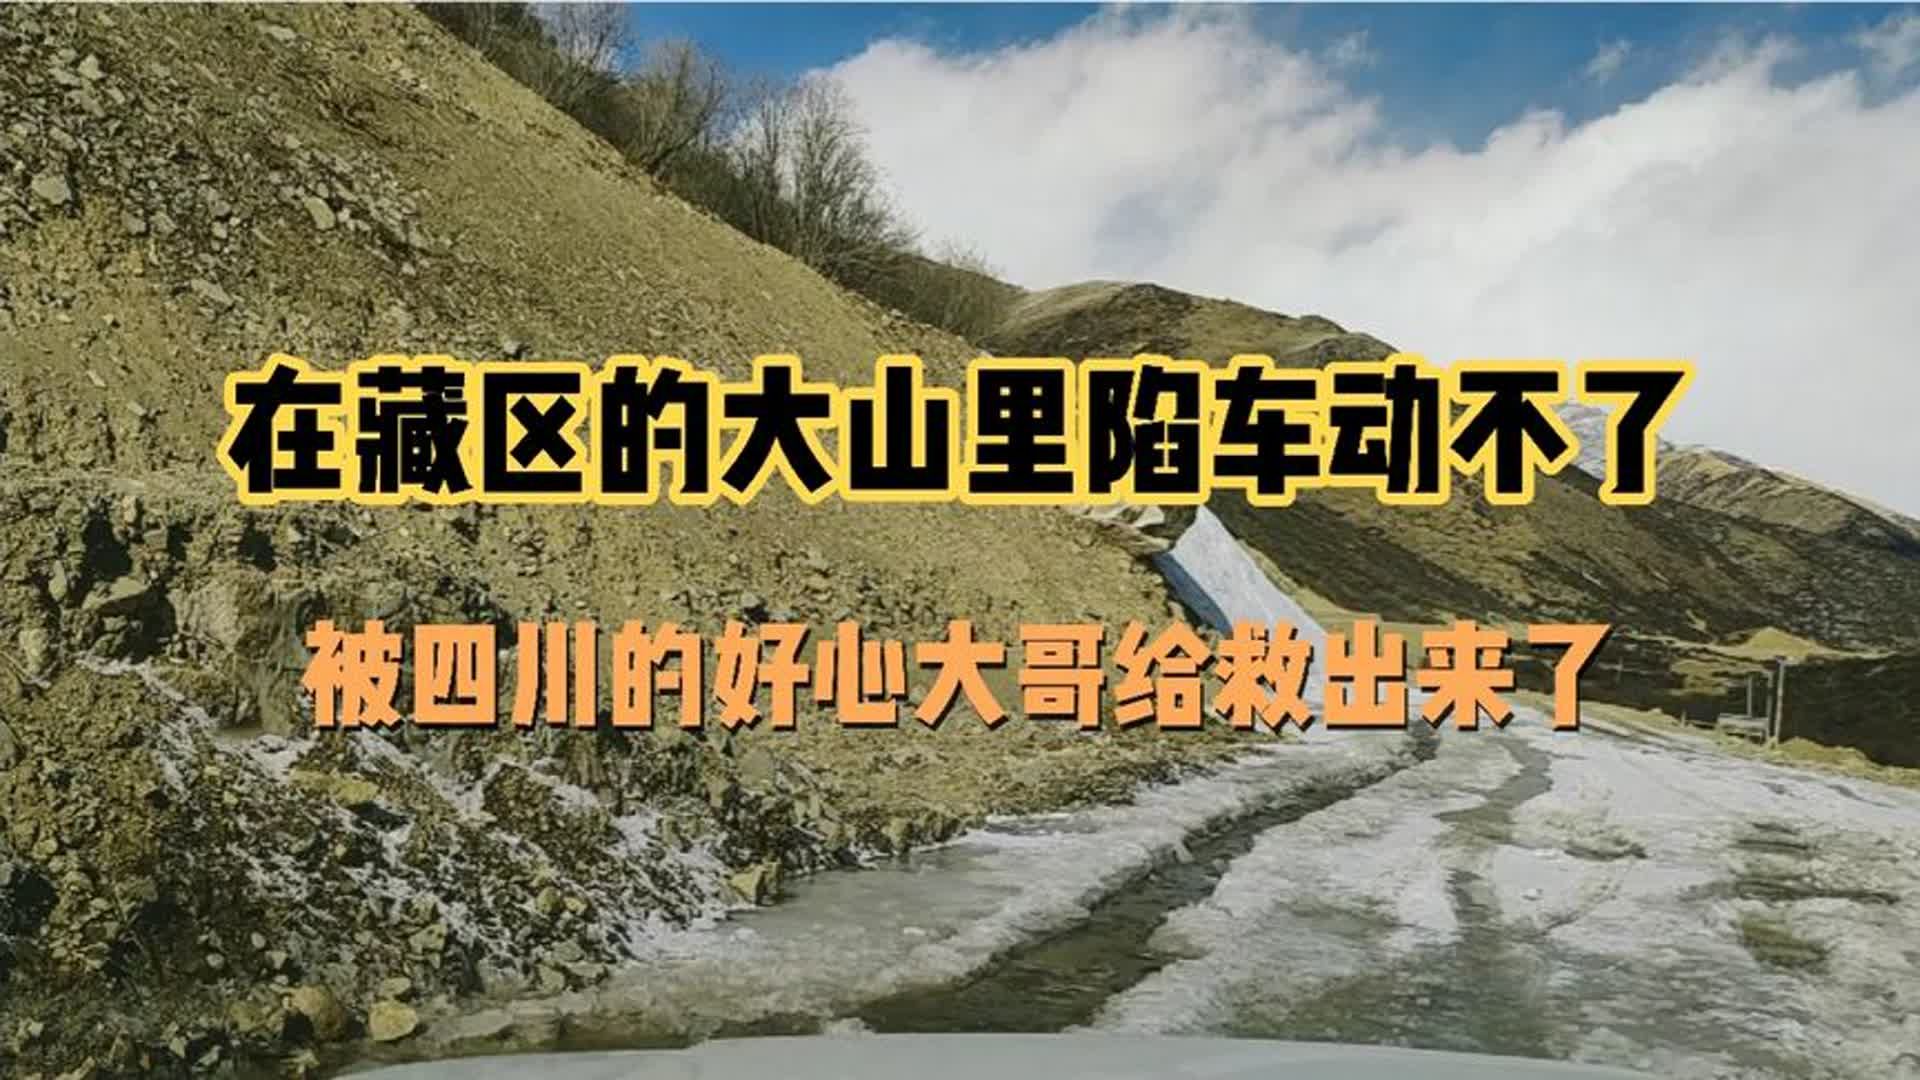 自驾游西藏在藏区的大山里陷车动不了，被四川的大哥给救援出来了